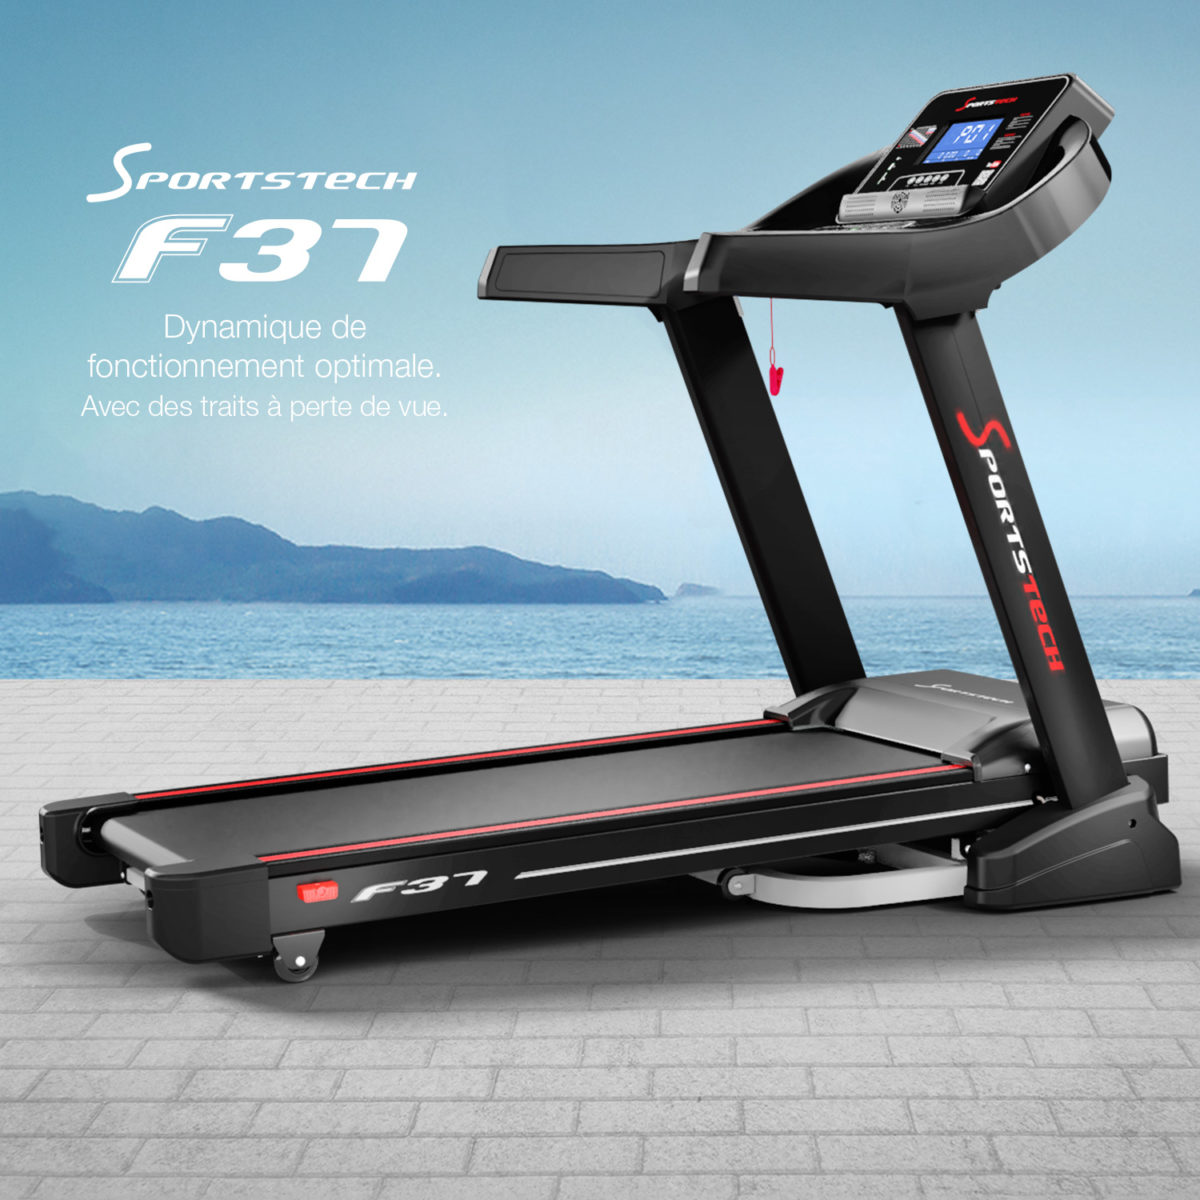 Sportstech F37